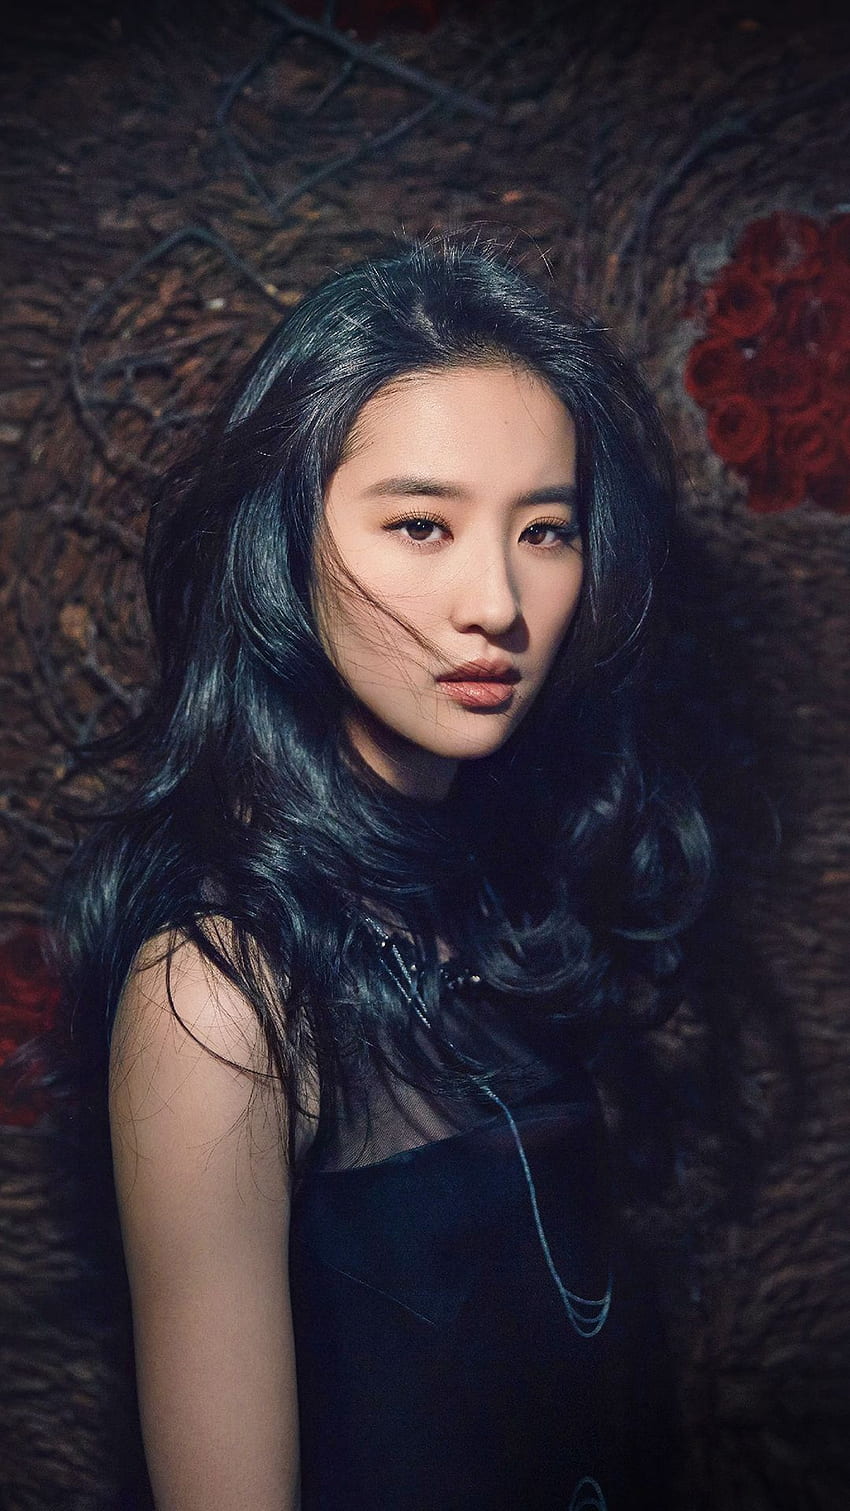 Girl Liu Yifei China Film Actress Model Singer Dark iPhone 6 . iPhone , iPad wal. Asian models female, Cute hair colors, Asian beauty, Chinese Lady HD phone wallpaper